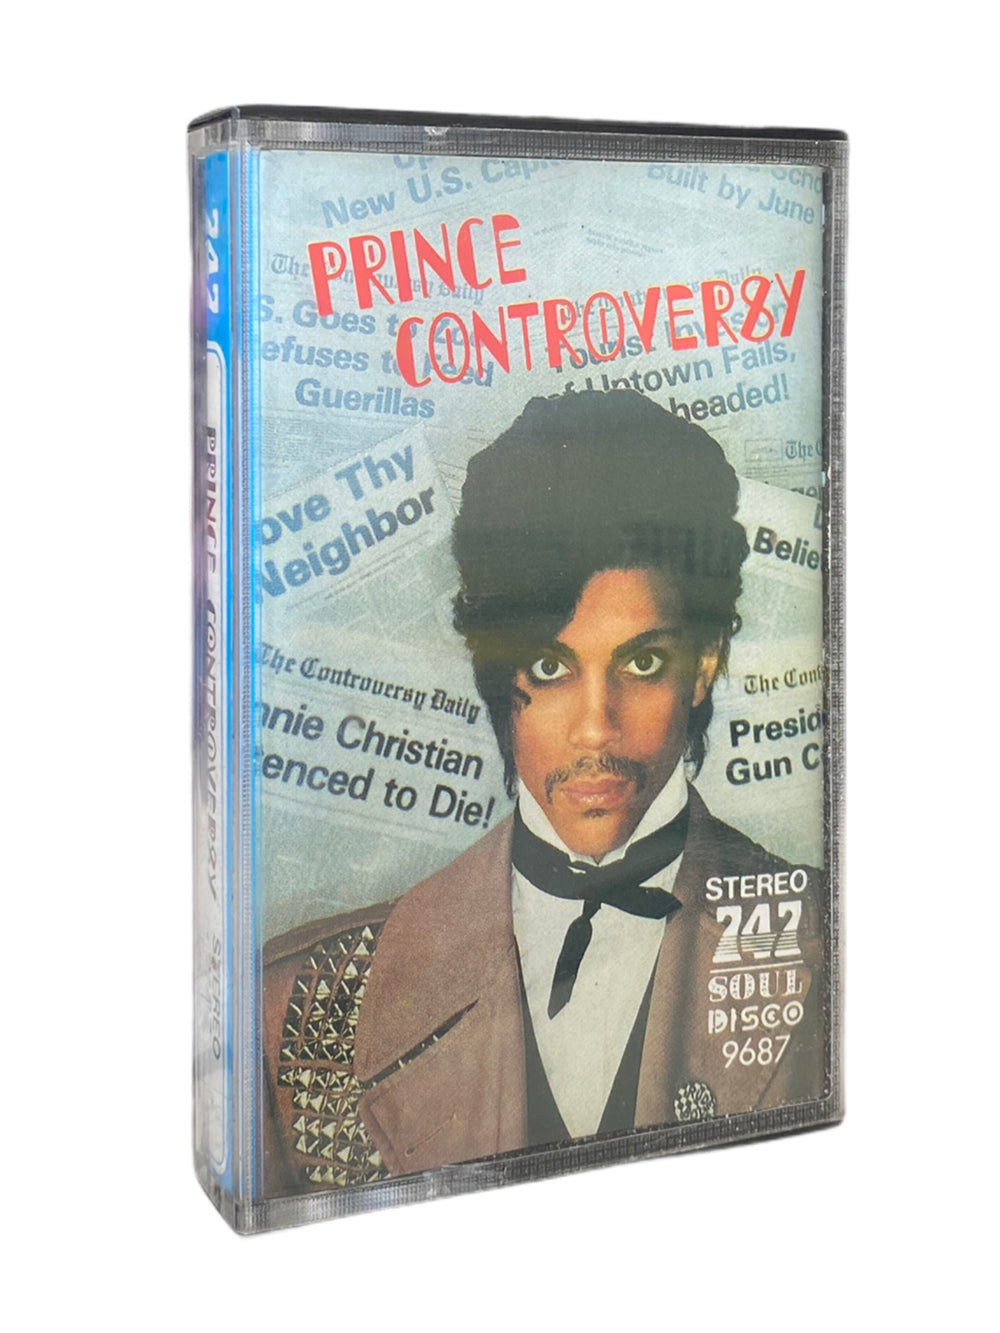 Prince – Controversy Tape Cassette Rare Inc Corvette Delirious 747 Soul Disco